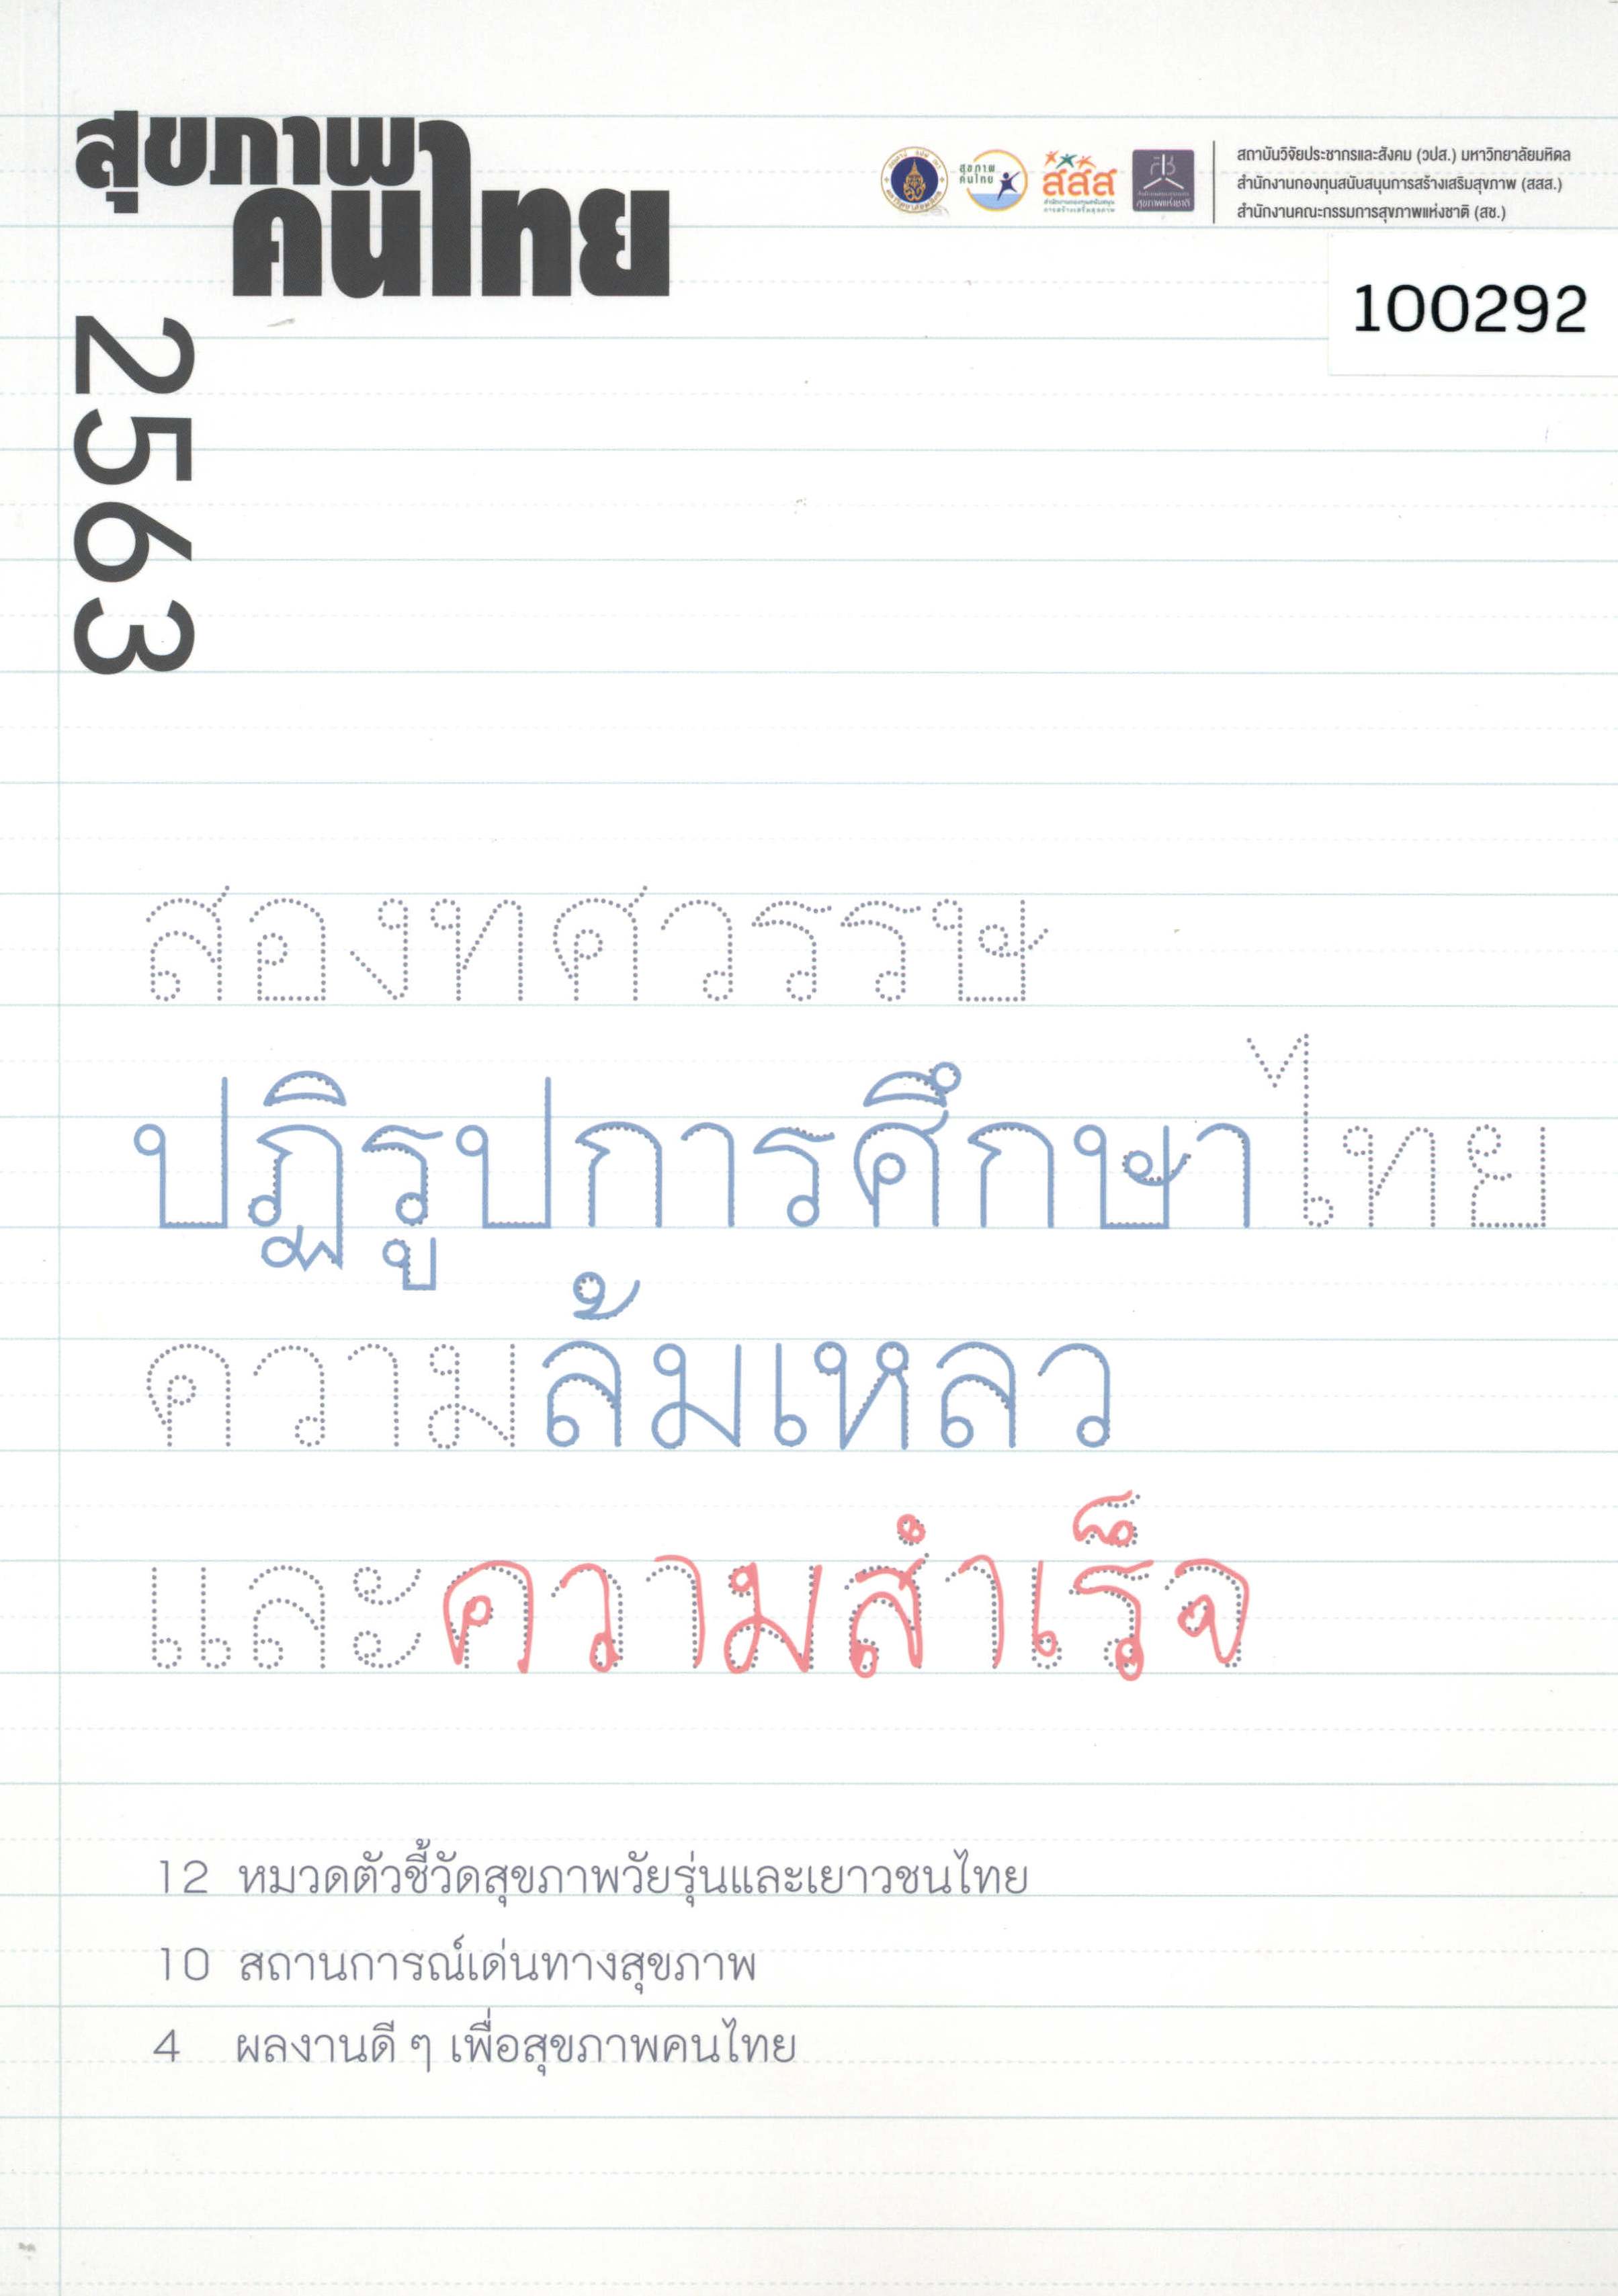 สุขภาพคนไทย 2563: สองทศวรรษปฏิรูปการศึกษาไทย ความล้มเหลวและความสำเร็จ 